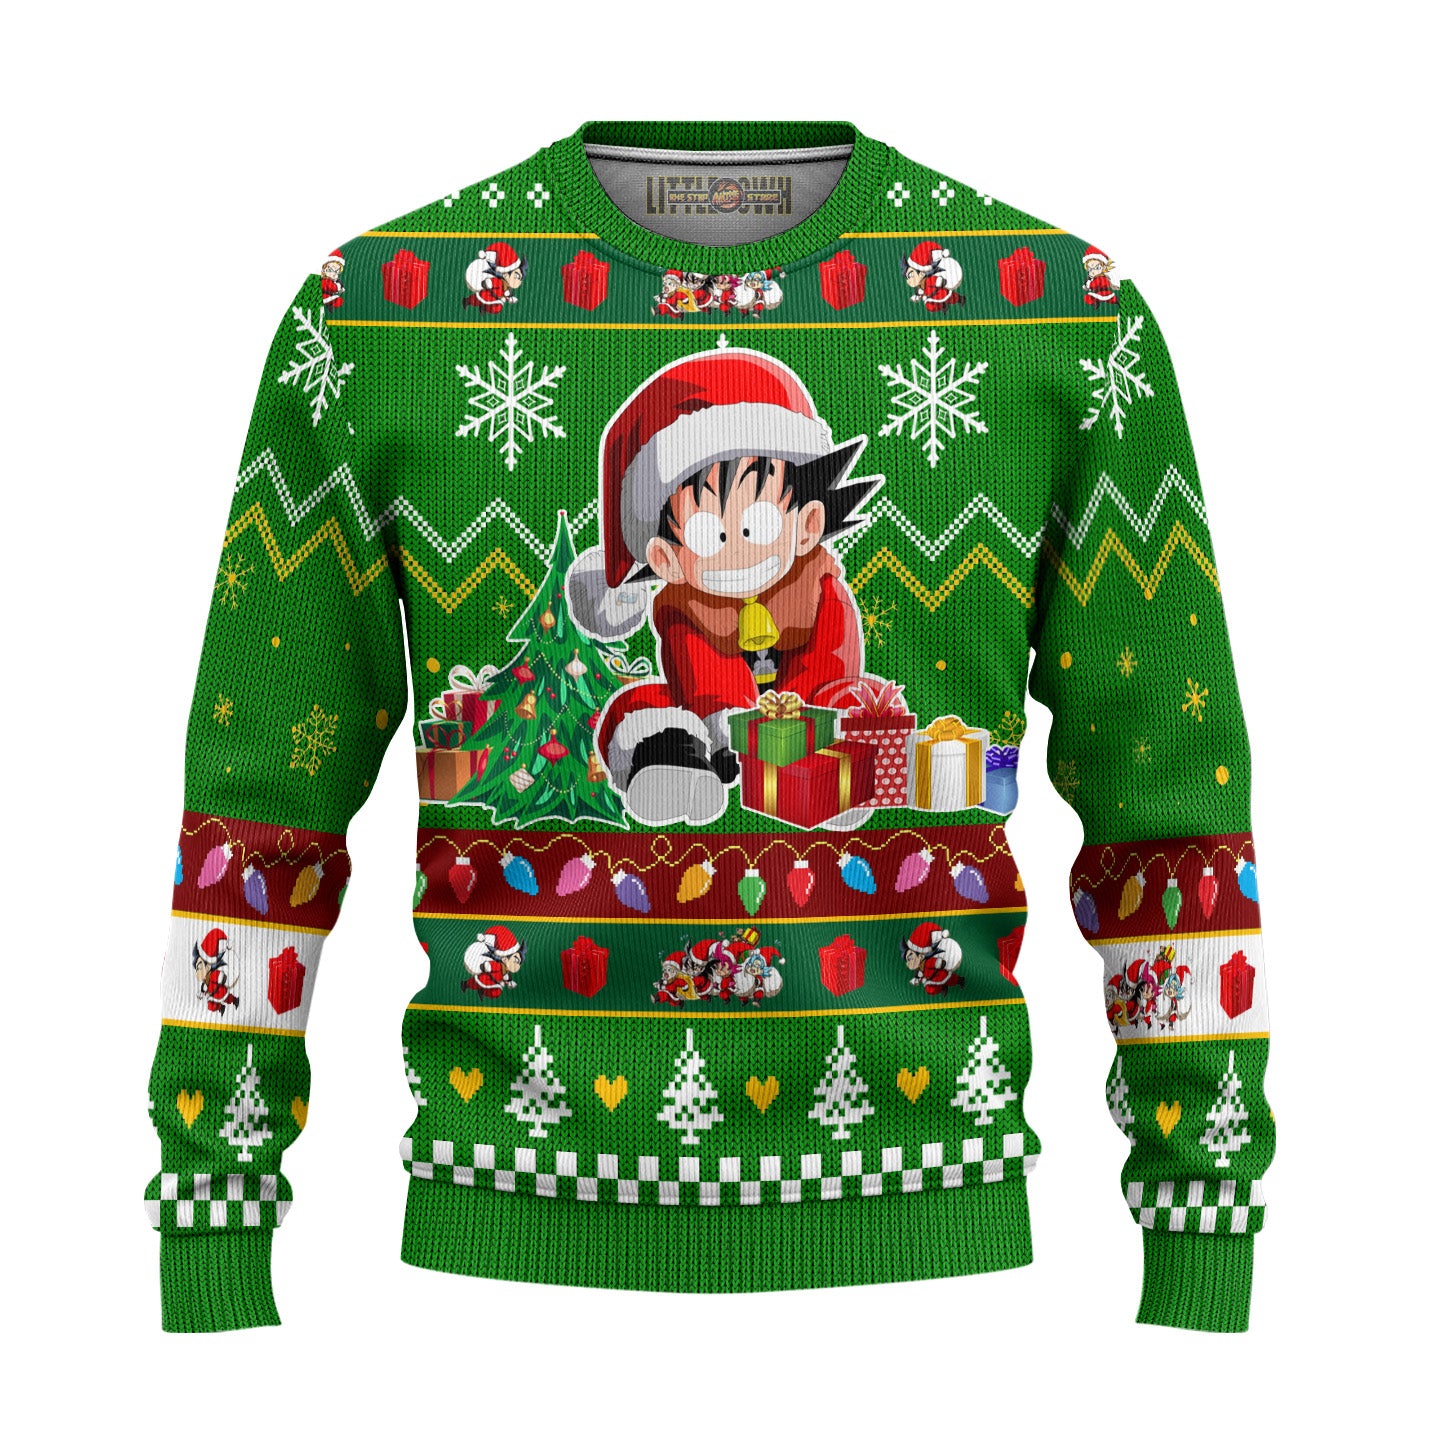 Goku x Gohan x Chi Chi Dragon Ball Anime Ugly Christmas Sweater New Design